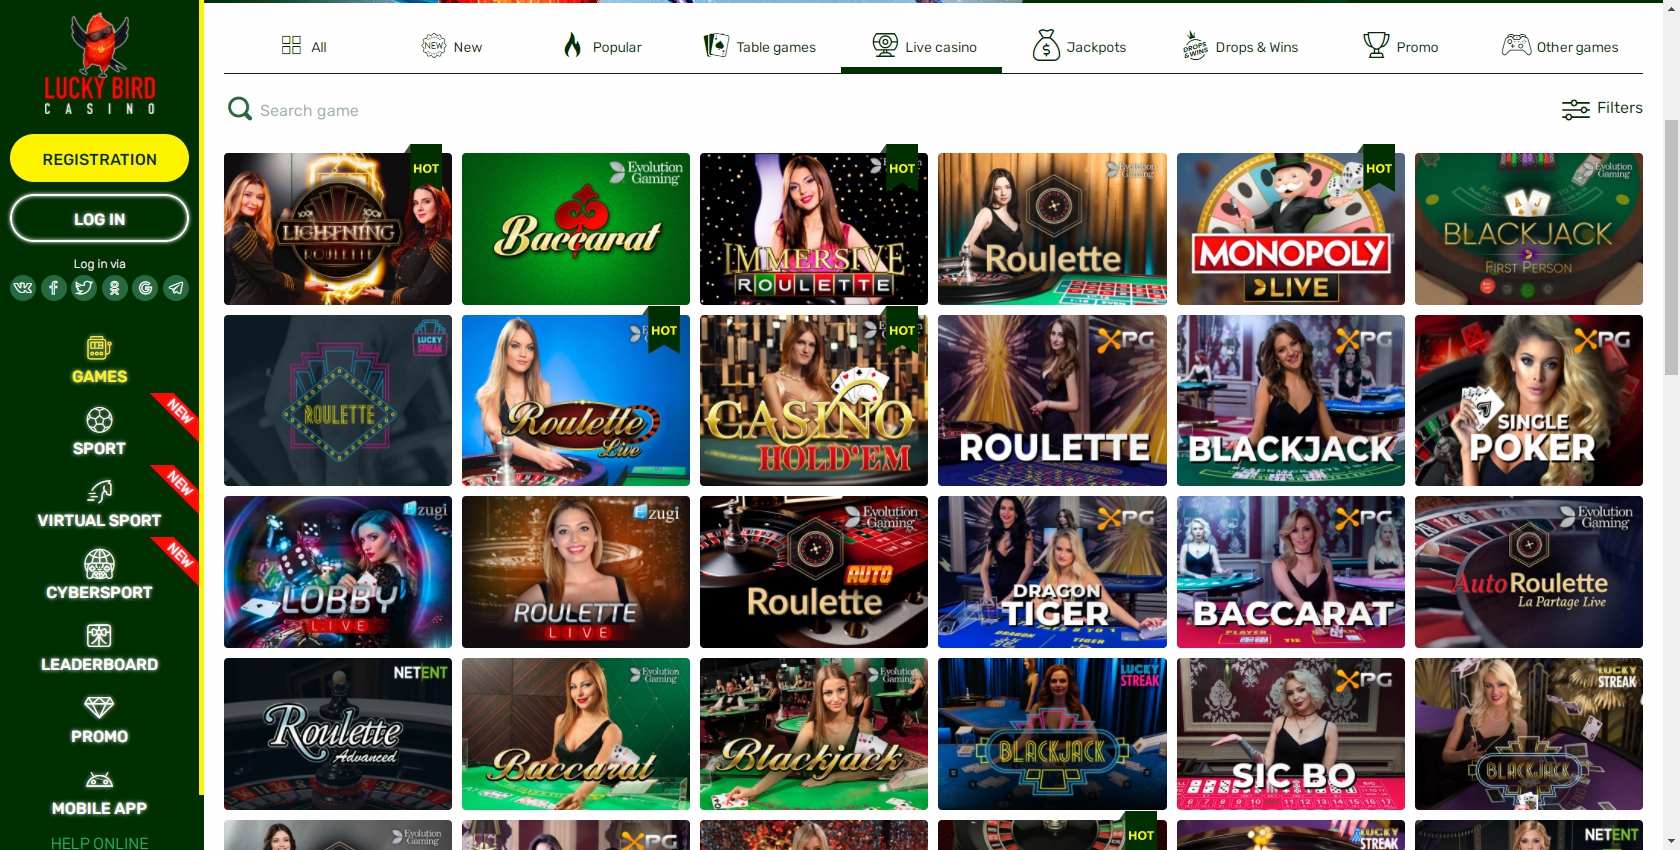 Lucky Bird Casino Live Dealer Games